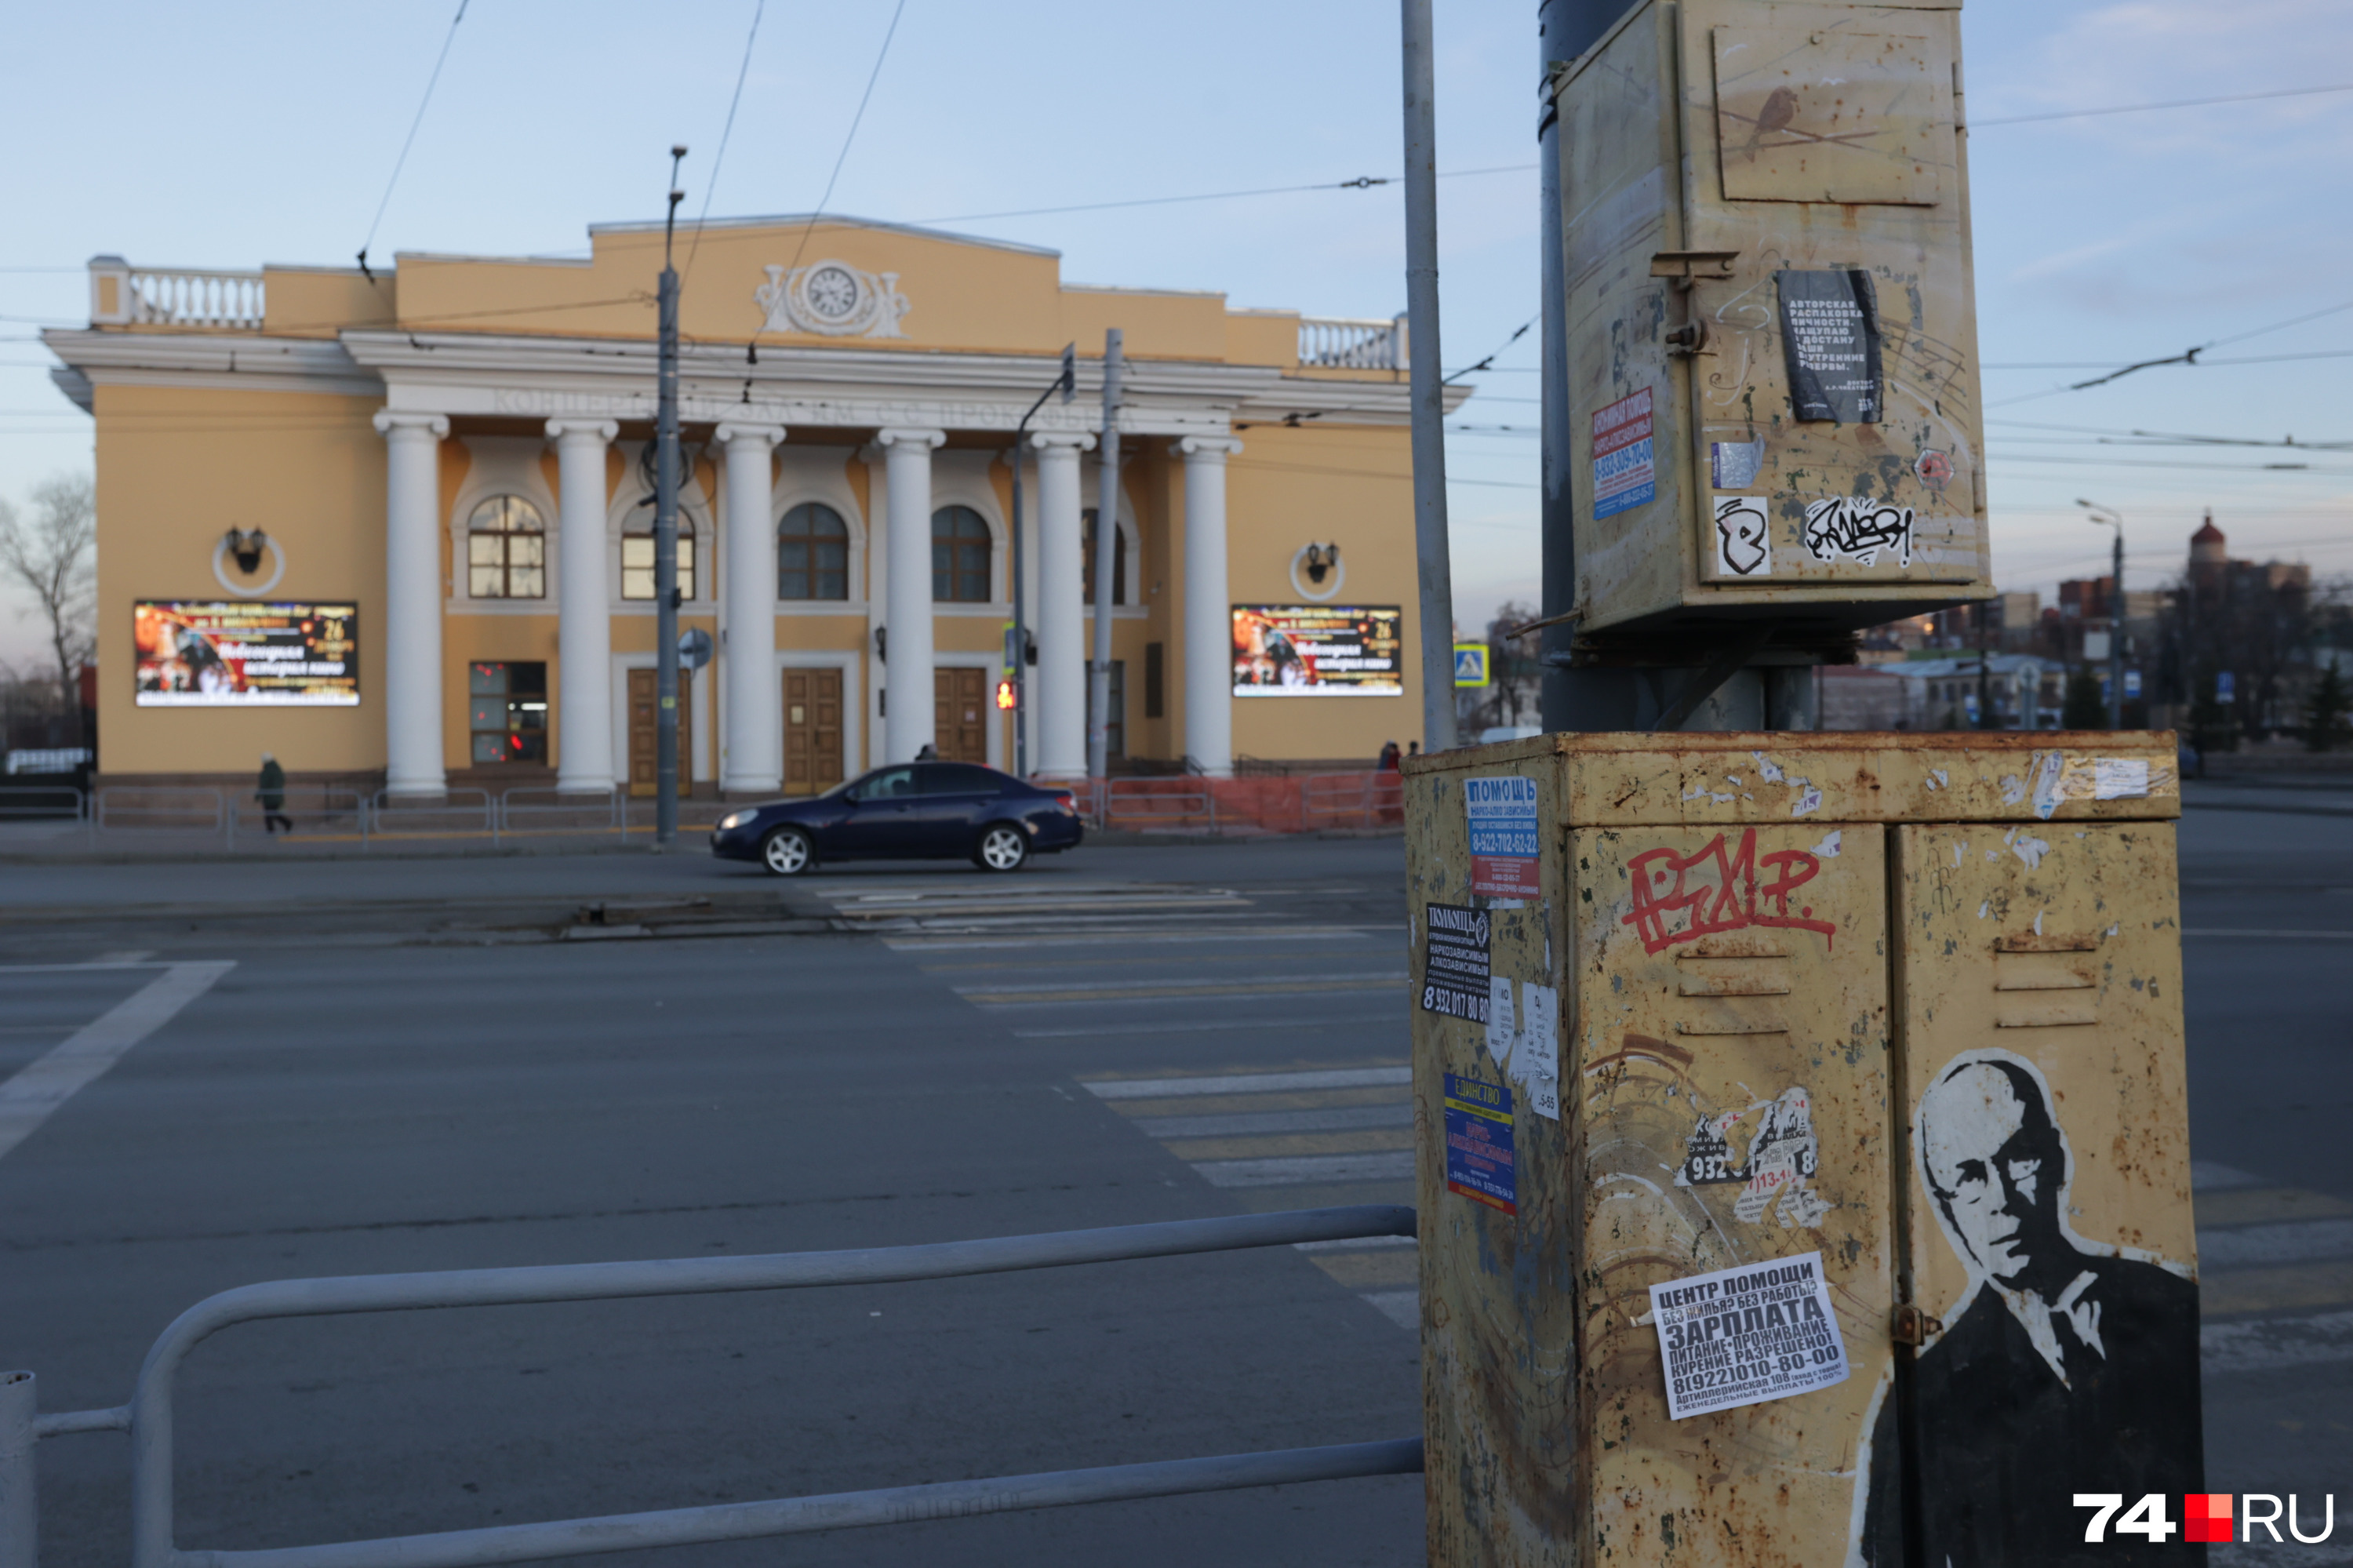 Художник размещает свои плакаты в основном в центре Челябинска, там, где много пешеходов